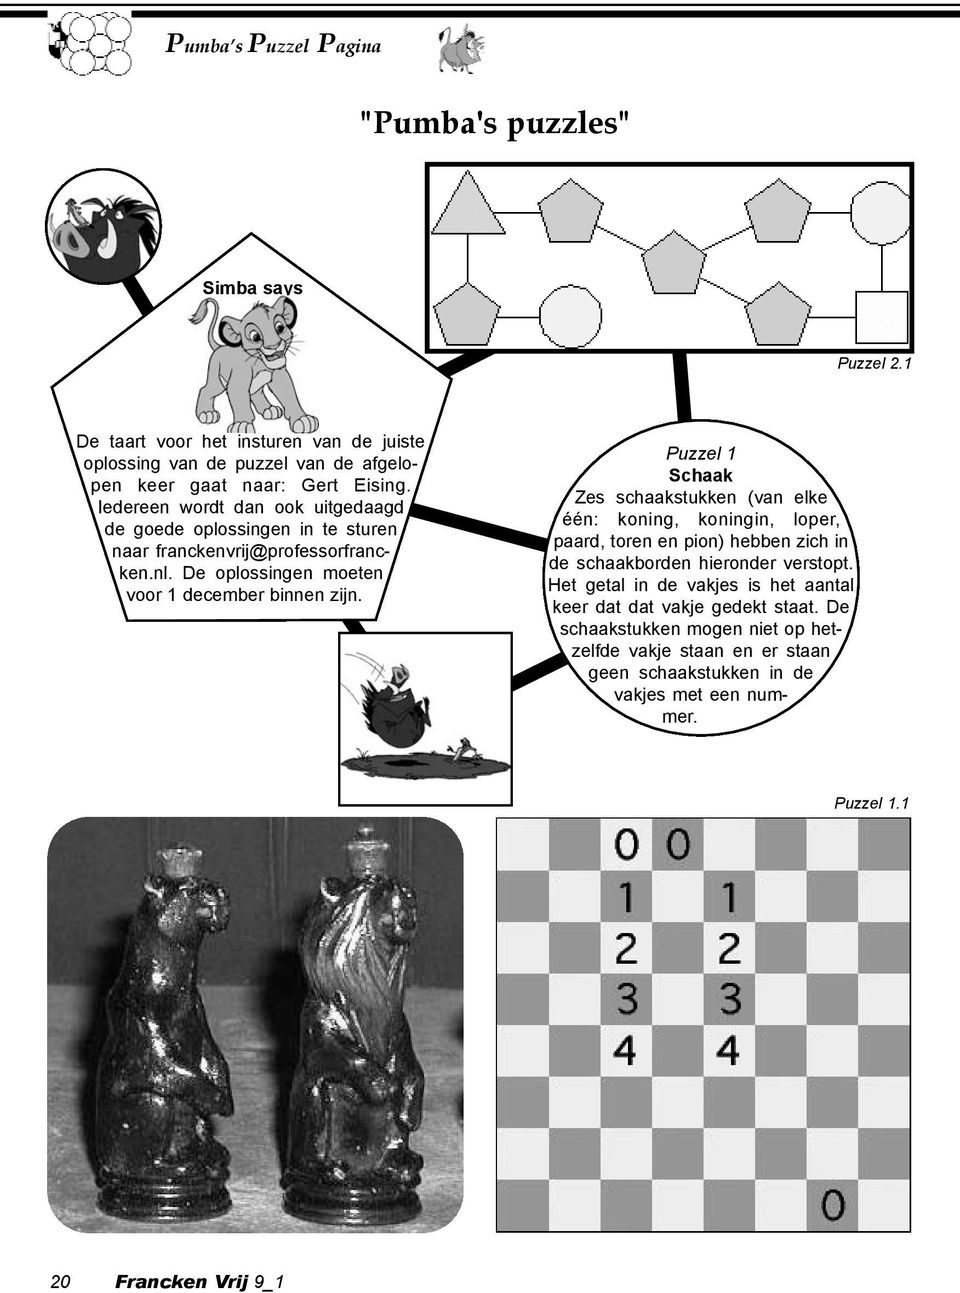 Puzzel 1 Schaak Zes schaakstukken (van elke één: koning, koningin, loper, paard, toren en pion) hebben zich in de schaakborden hieronder verstopt.